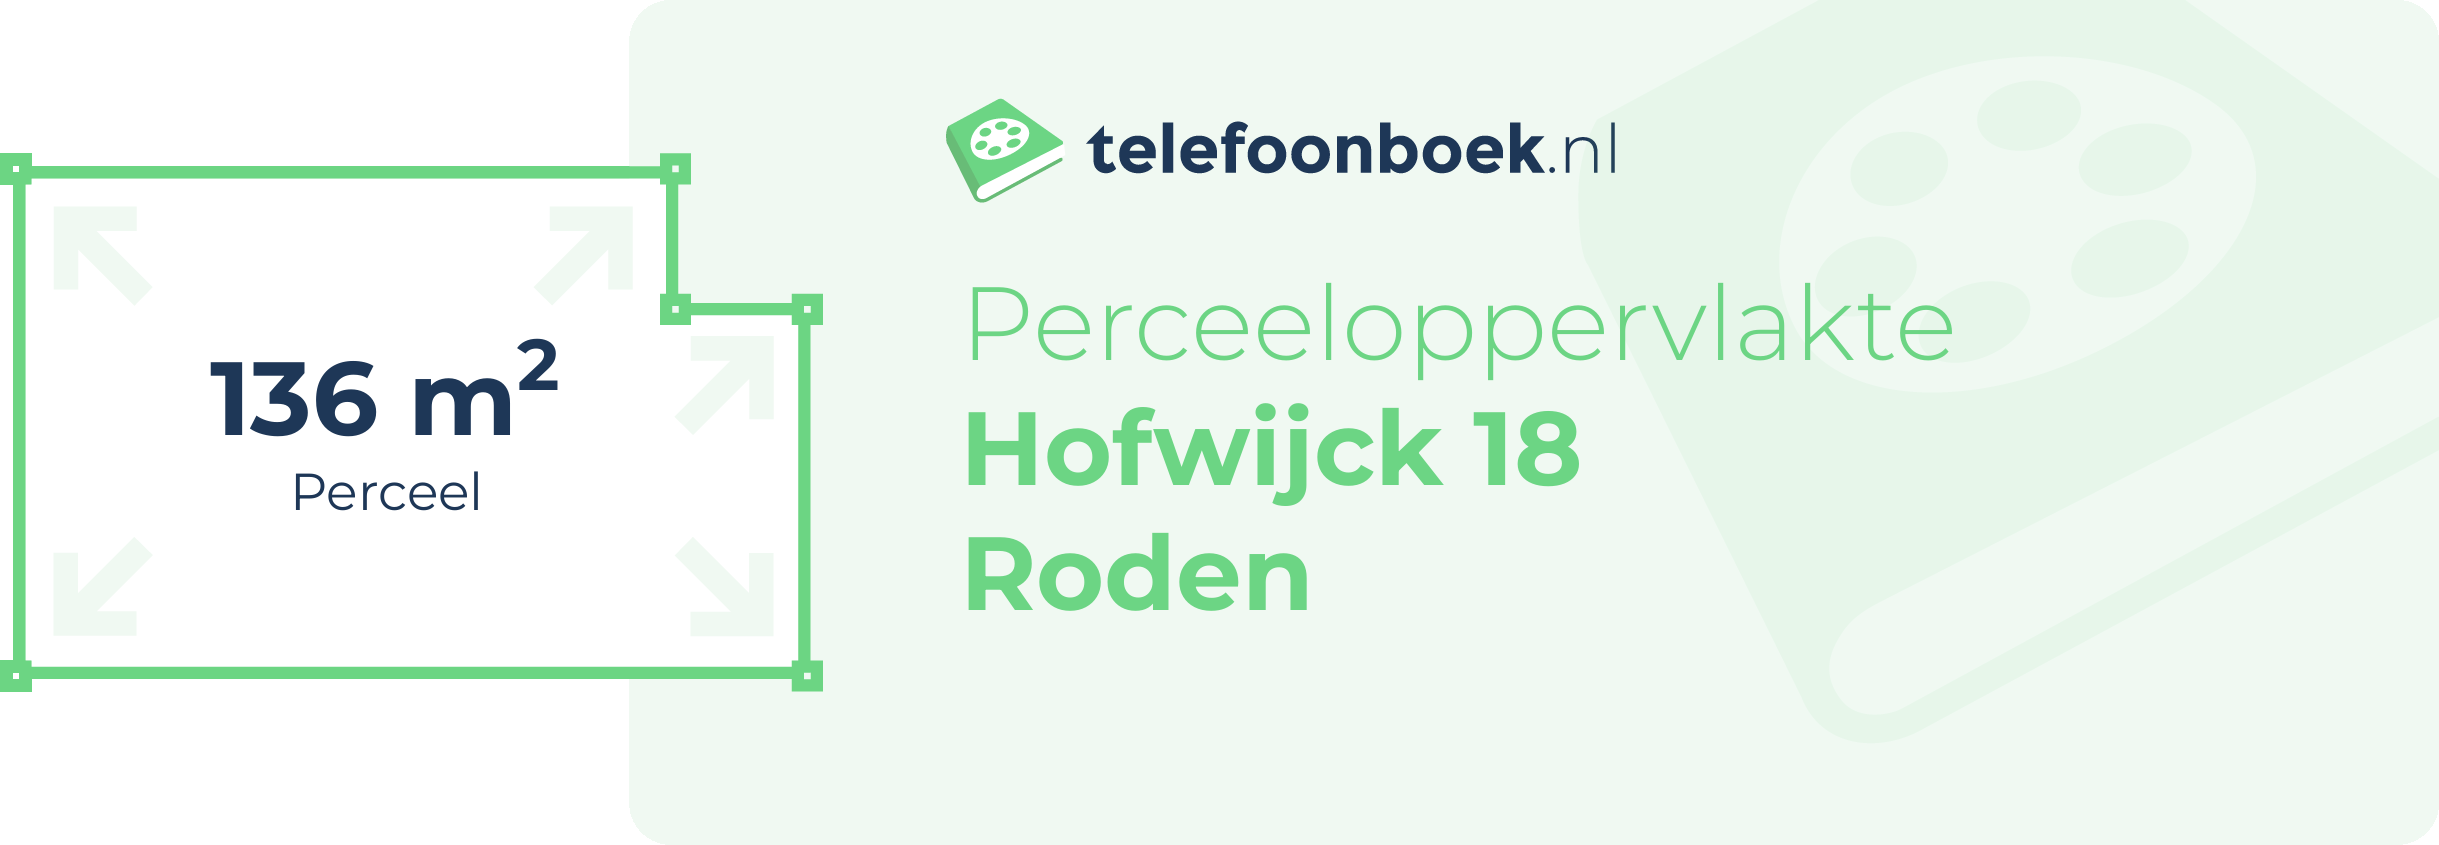 Perceeloppervlakte Hofwijck 18 Roden